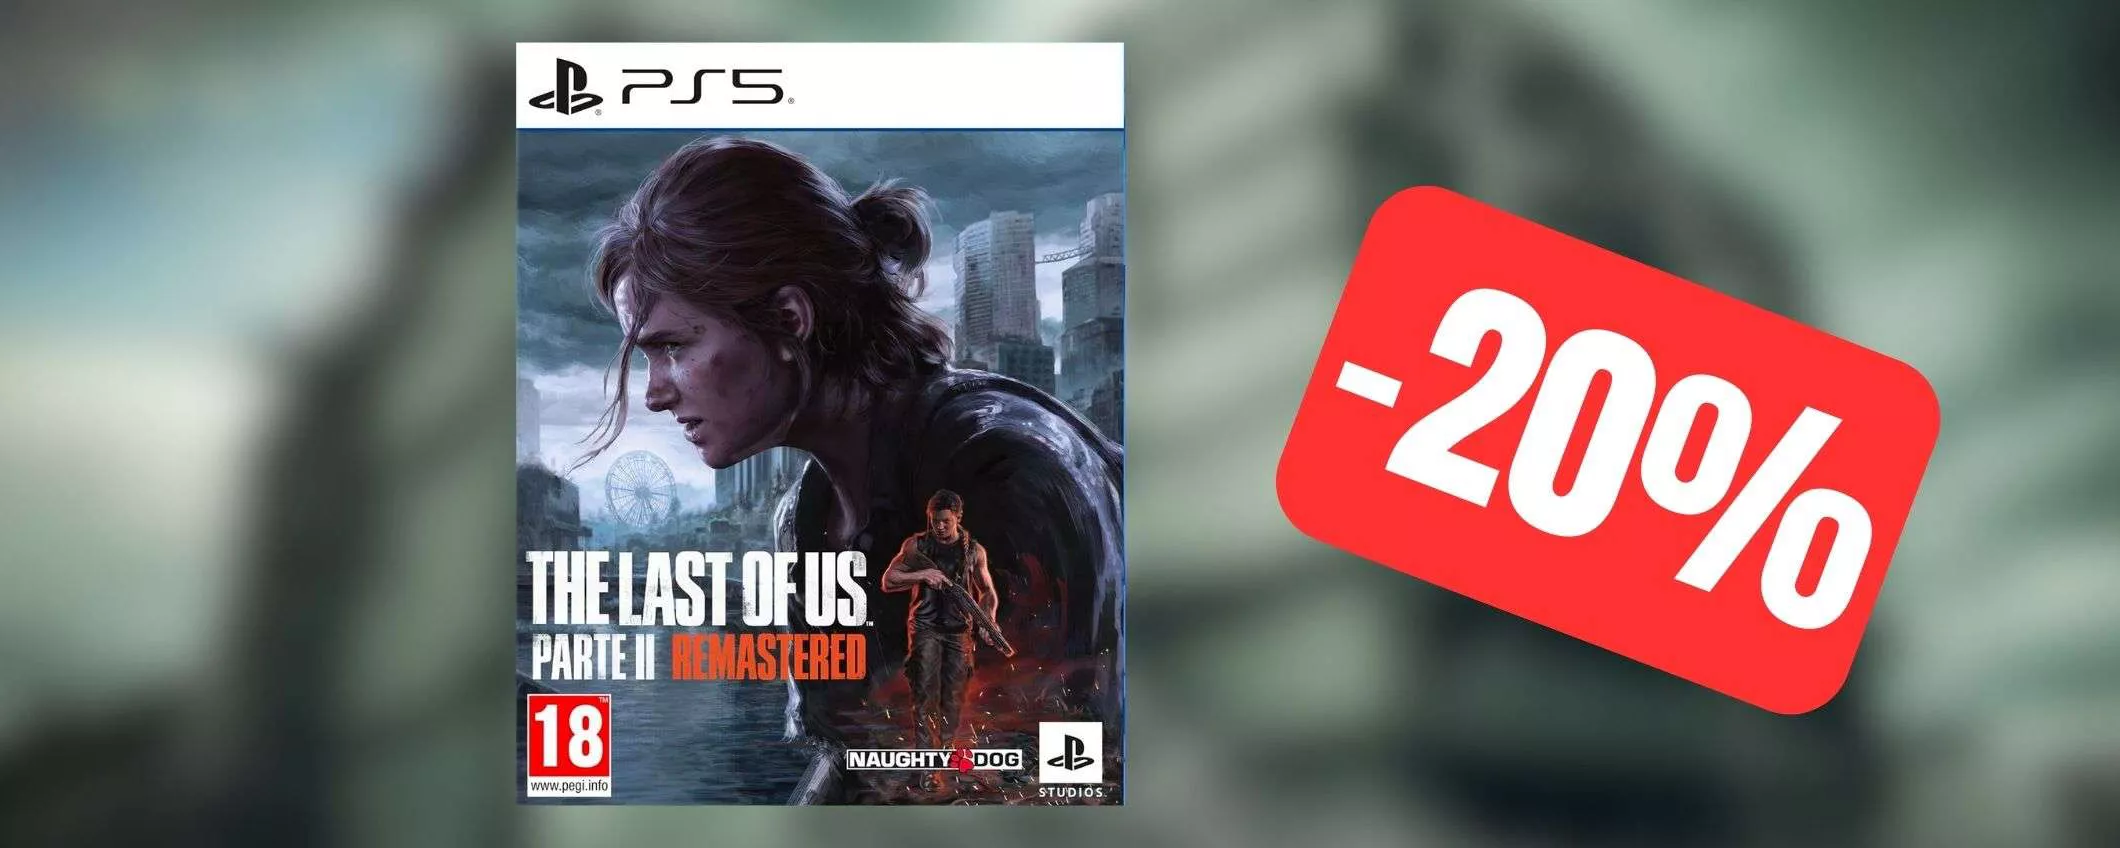 The Last of Us Parte II Remastered per PS5 in offerta al MINIMO STORICO